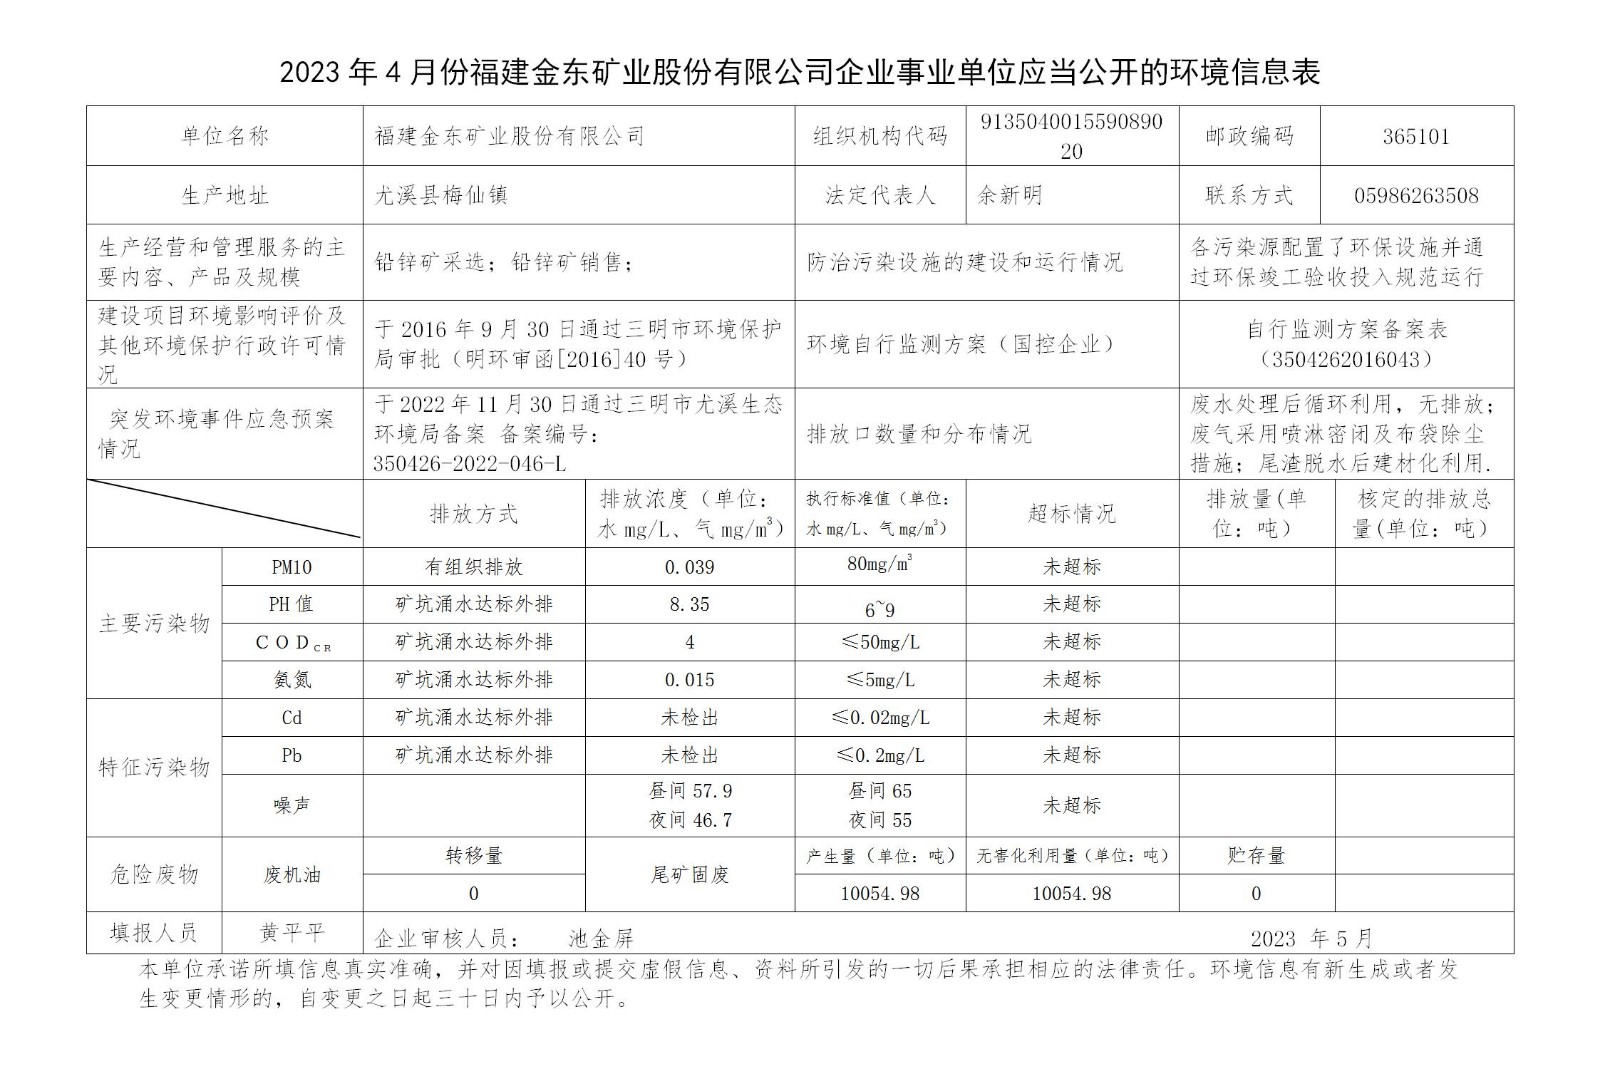 2023年4月份网投平台网址（中国）有限公司企业事业单位应当公开的环境信息表_01.jpg